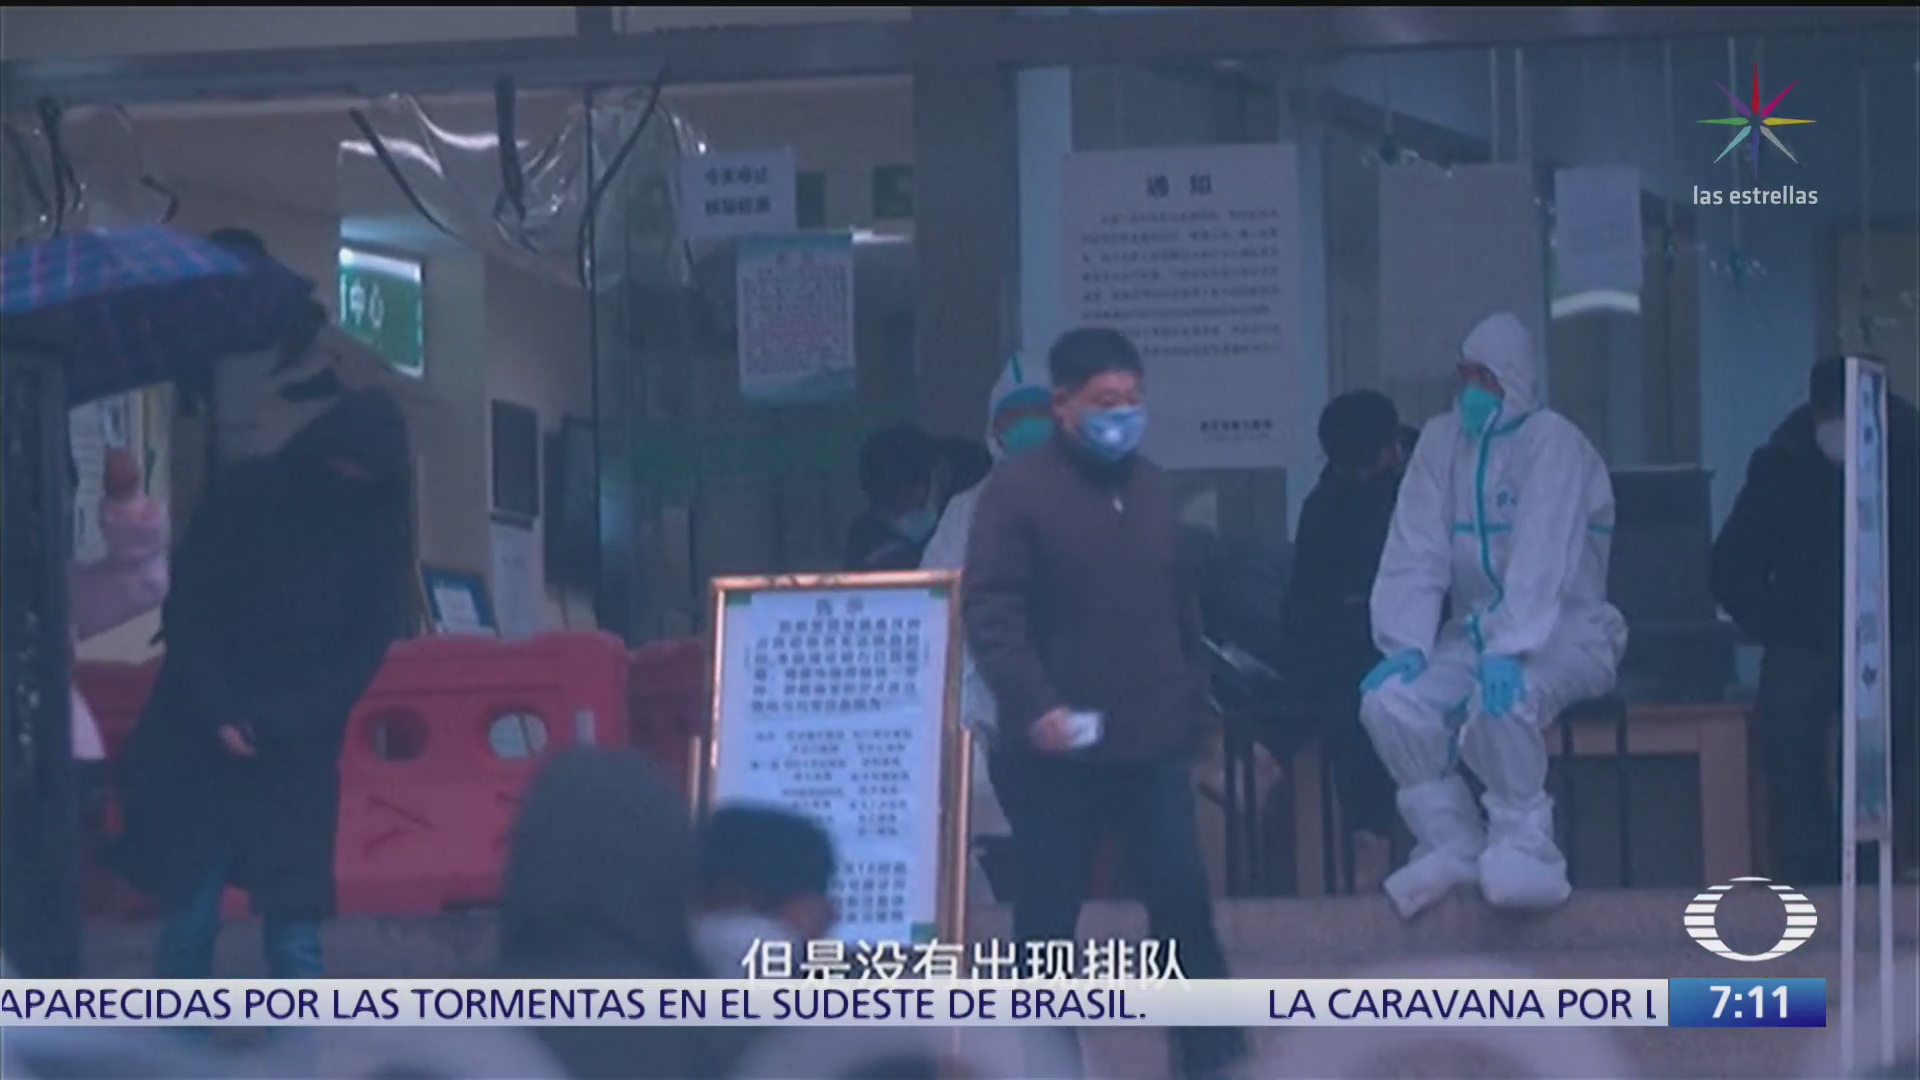 11 millones de habitantes incluido un mexicano aislados en wuhan por coronavirus